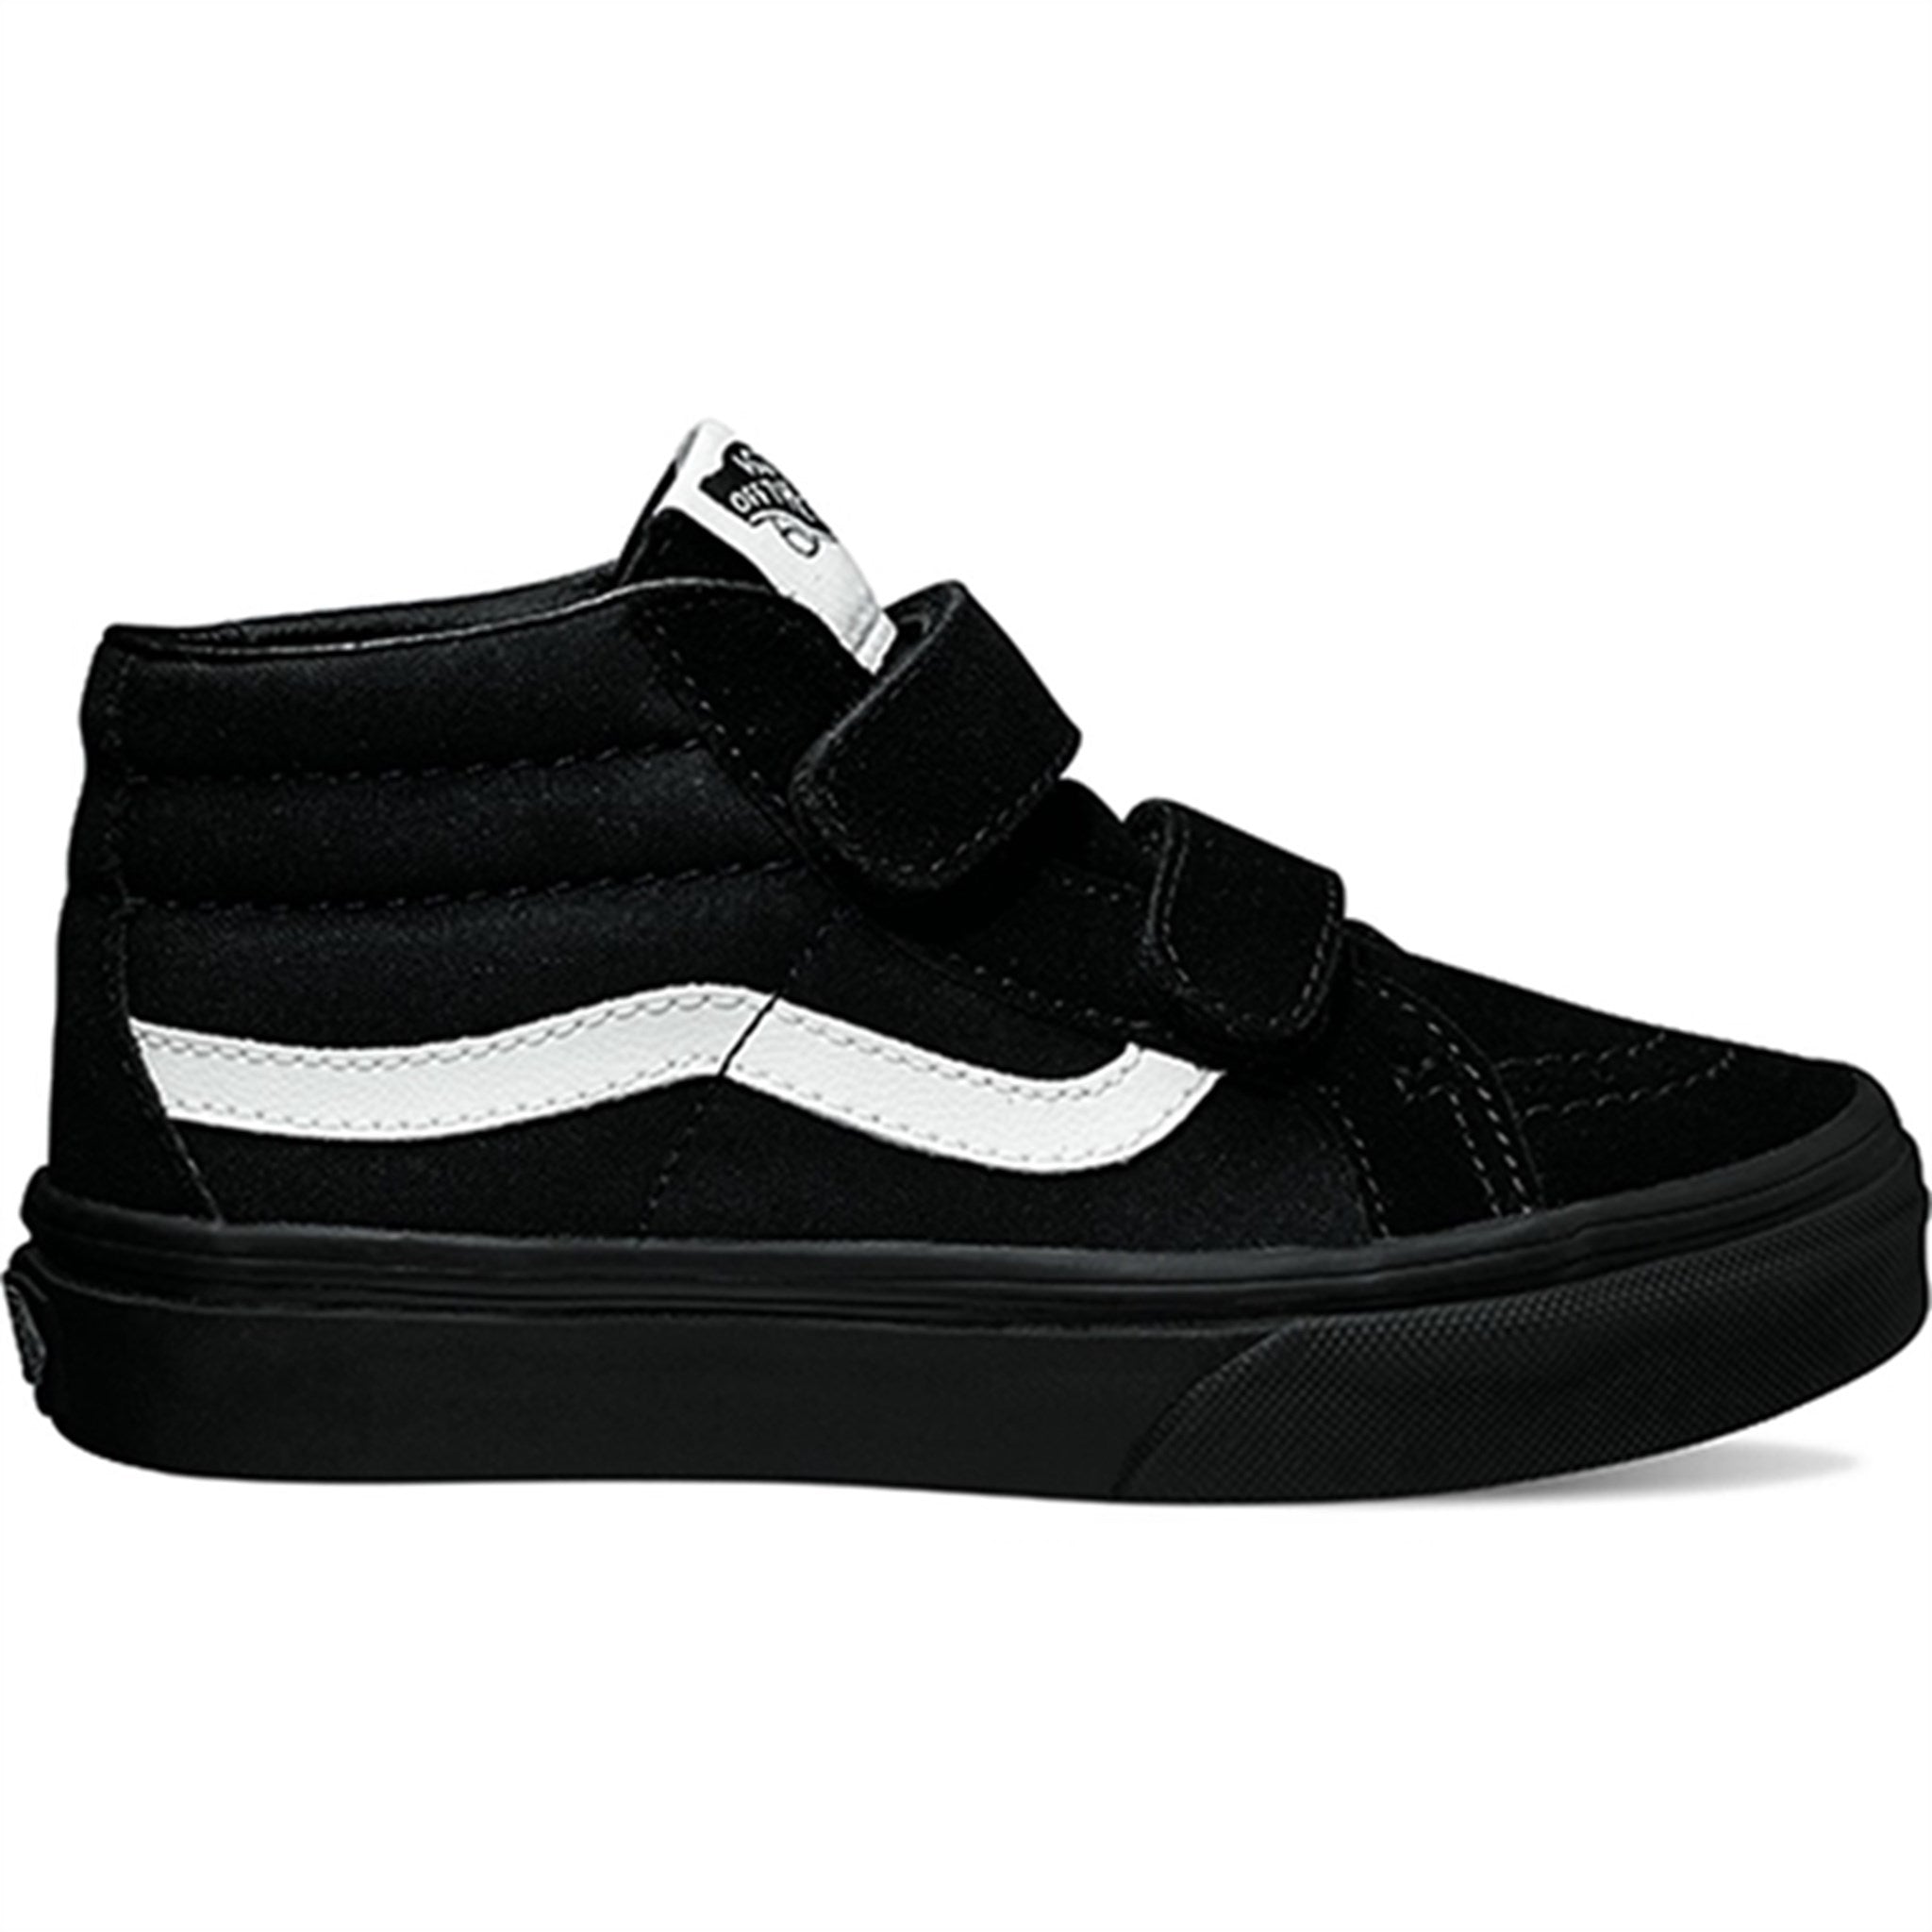 VANS Uy Sk8-Mid Reissue V (Canvas & Suede) Black/Black Sneakers